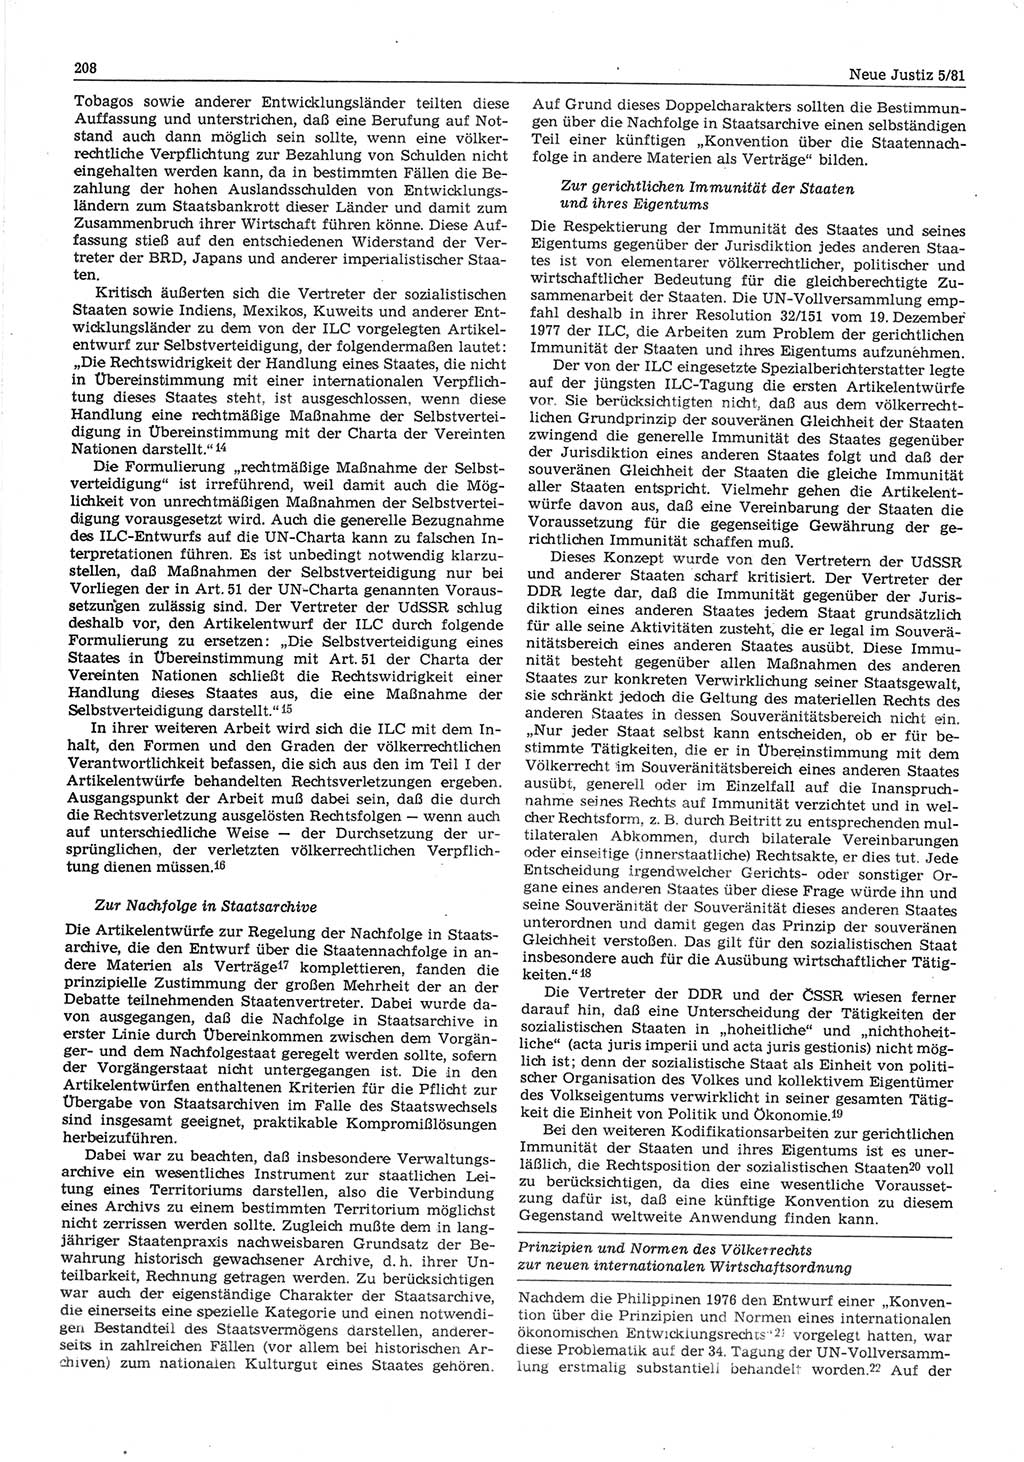 Neue Justiz (NJ), Zeitschrift für sozialistisches Recht und Gesetzlichkeit [Deutsche Demokratische Republik (DDR)], 35. Jahrgang 1981, Seite 208 (NJ DDR 1981, S. 208)